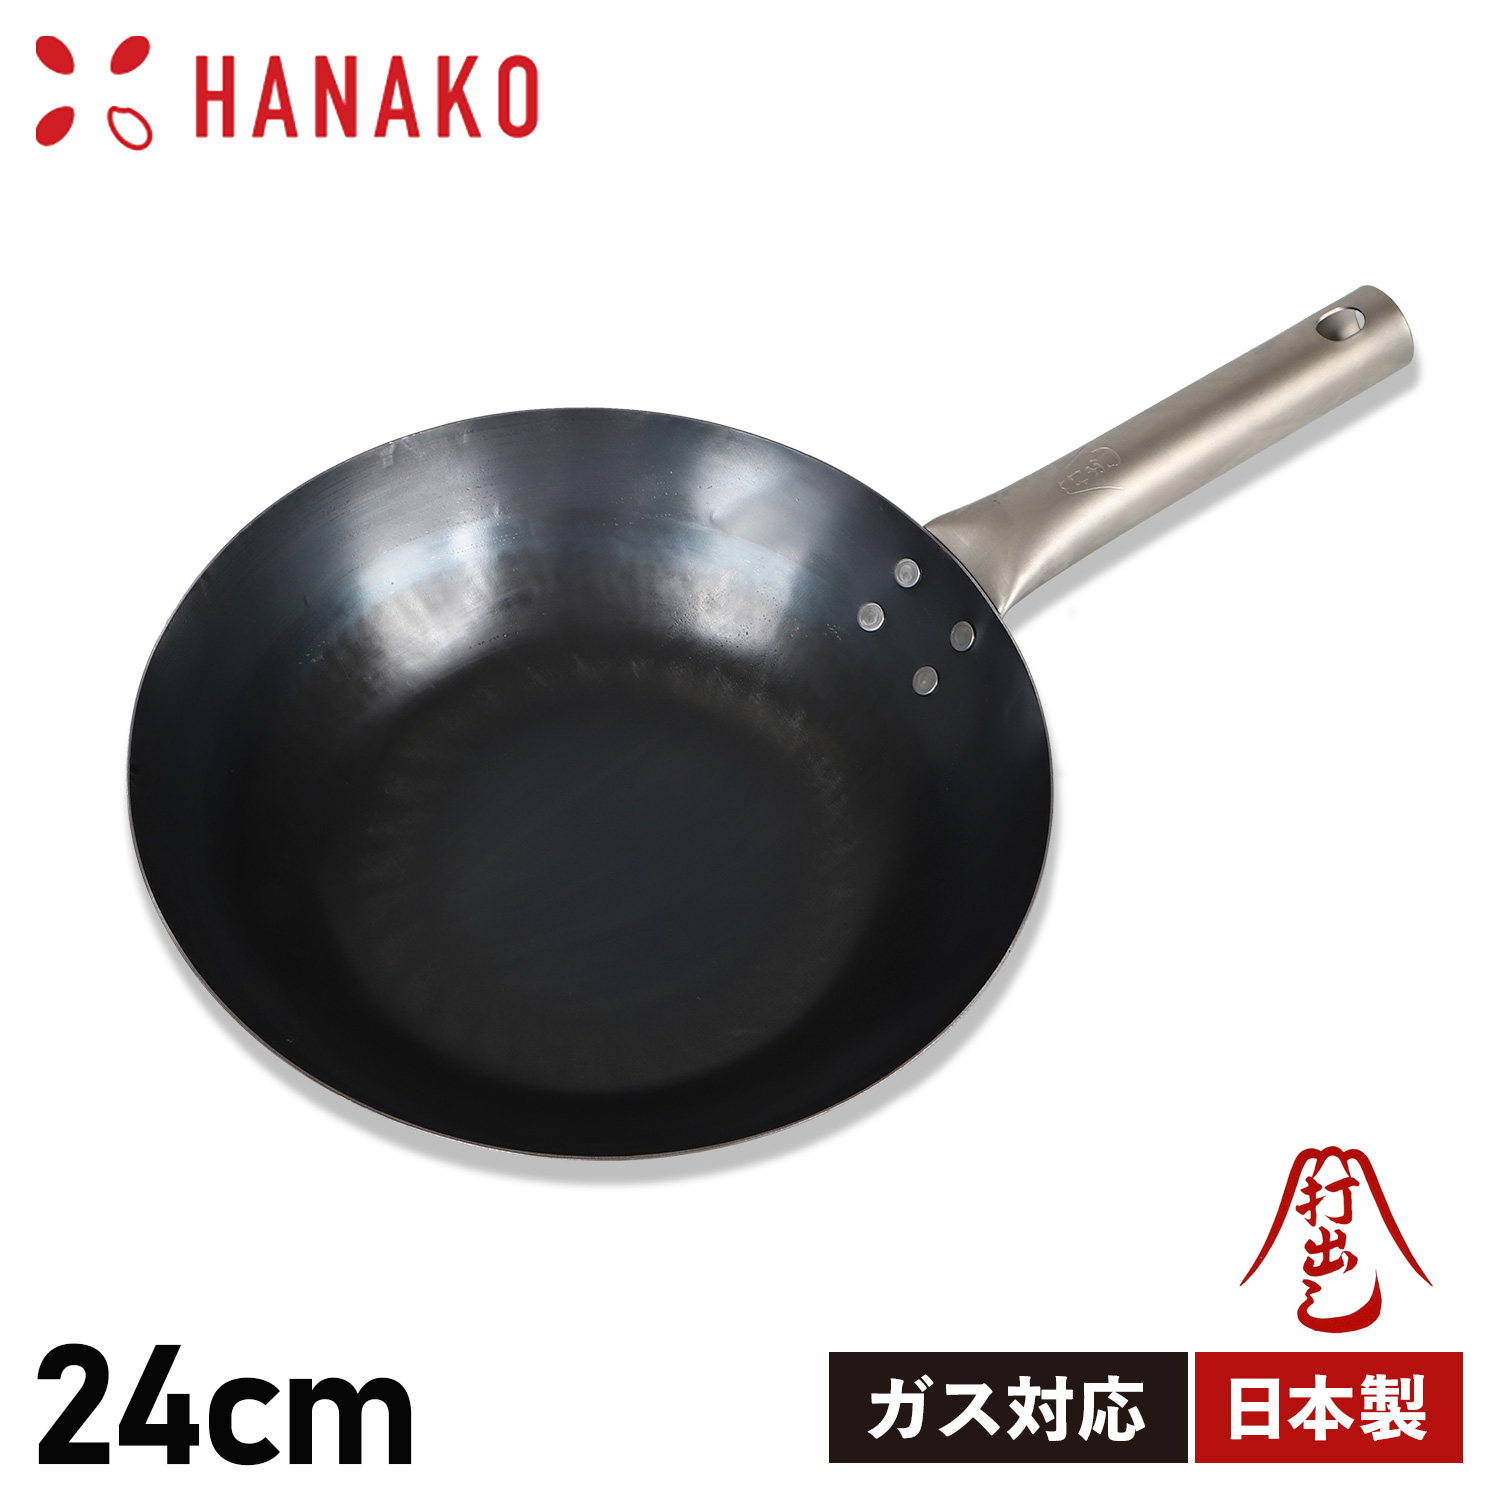 HANAKO ハナコ フライパン チタンハンドル 24cm 打ち出し製法 ガス 直